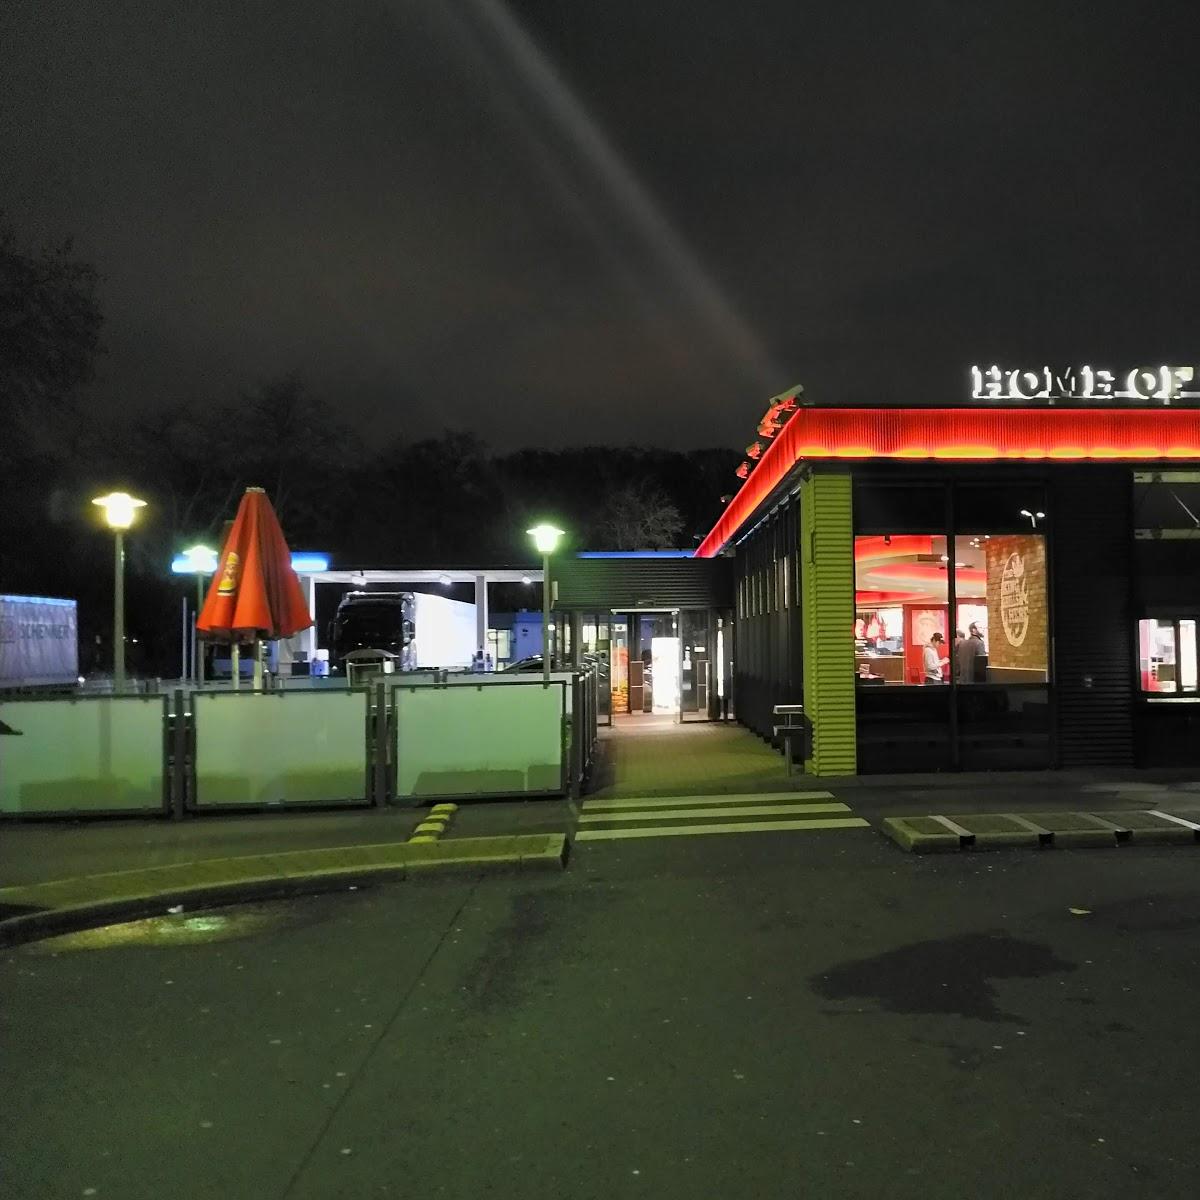 Restaurant "Burger King" in Köln